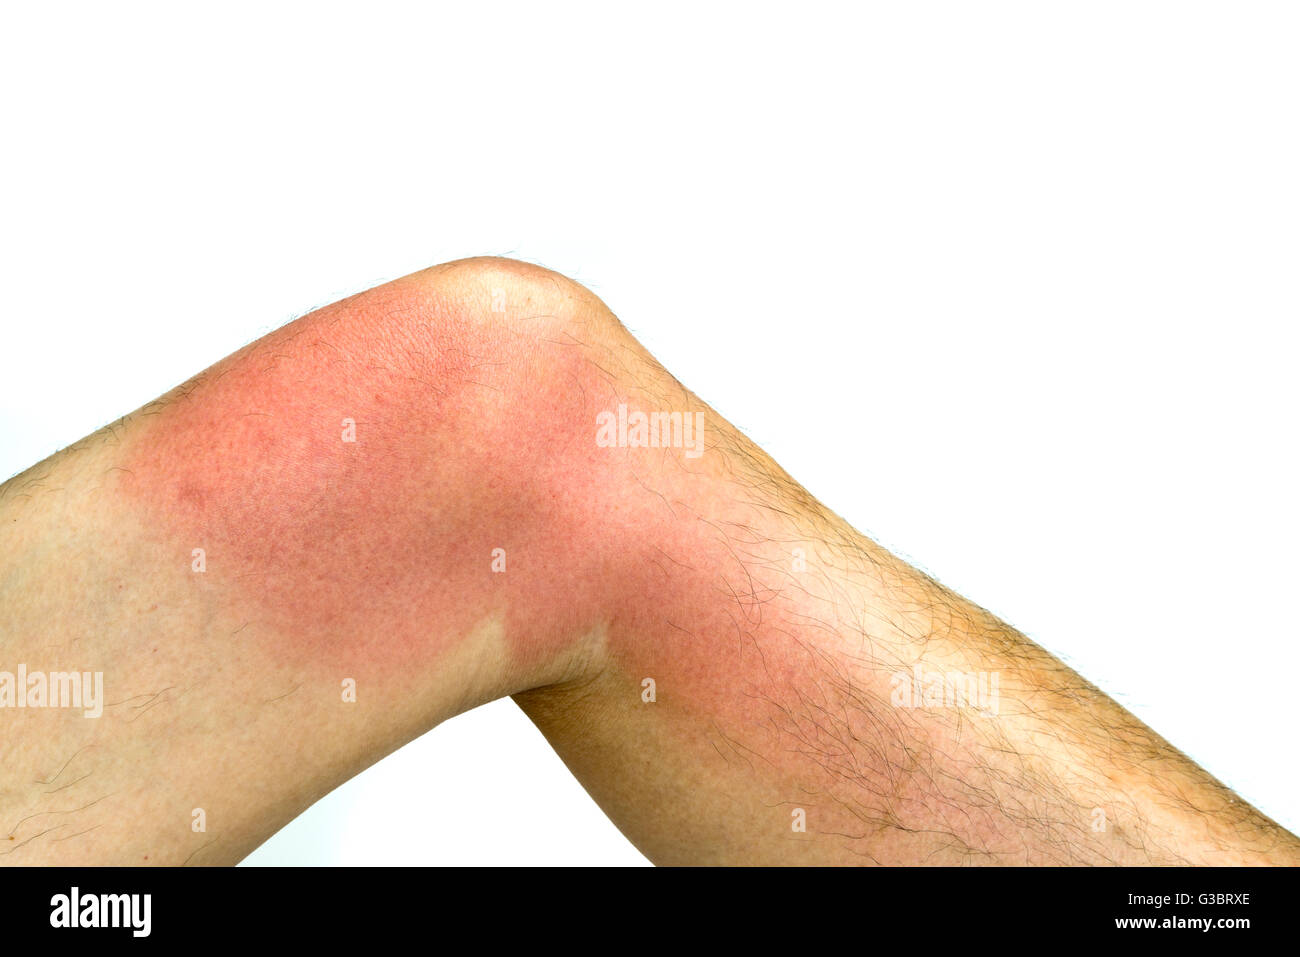 Sonnenbrand auf der Haut rund um die Knie des Mannes linkes Bein, isoliert auf weißem Hintergrund Stockfoto